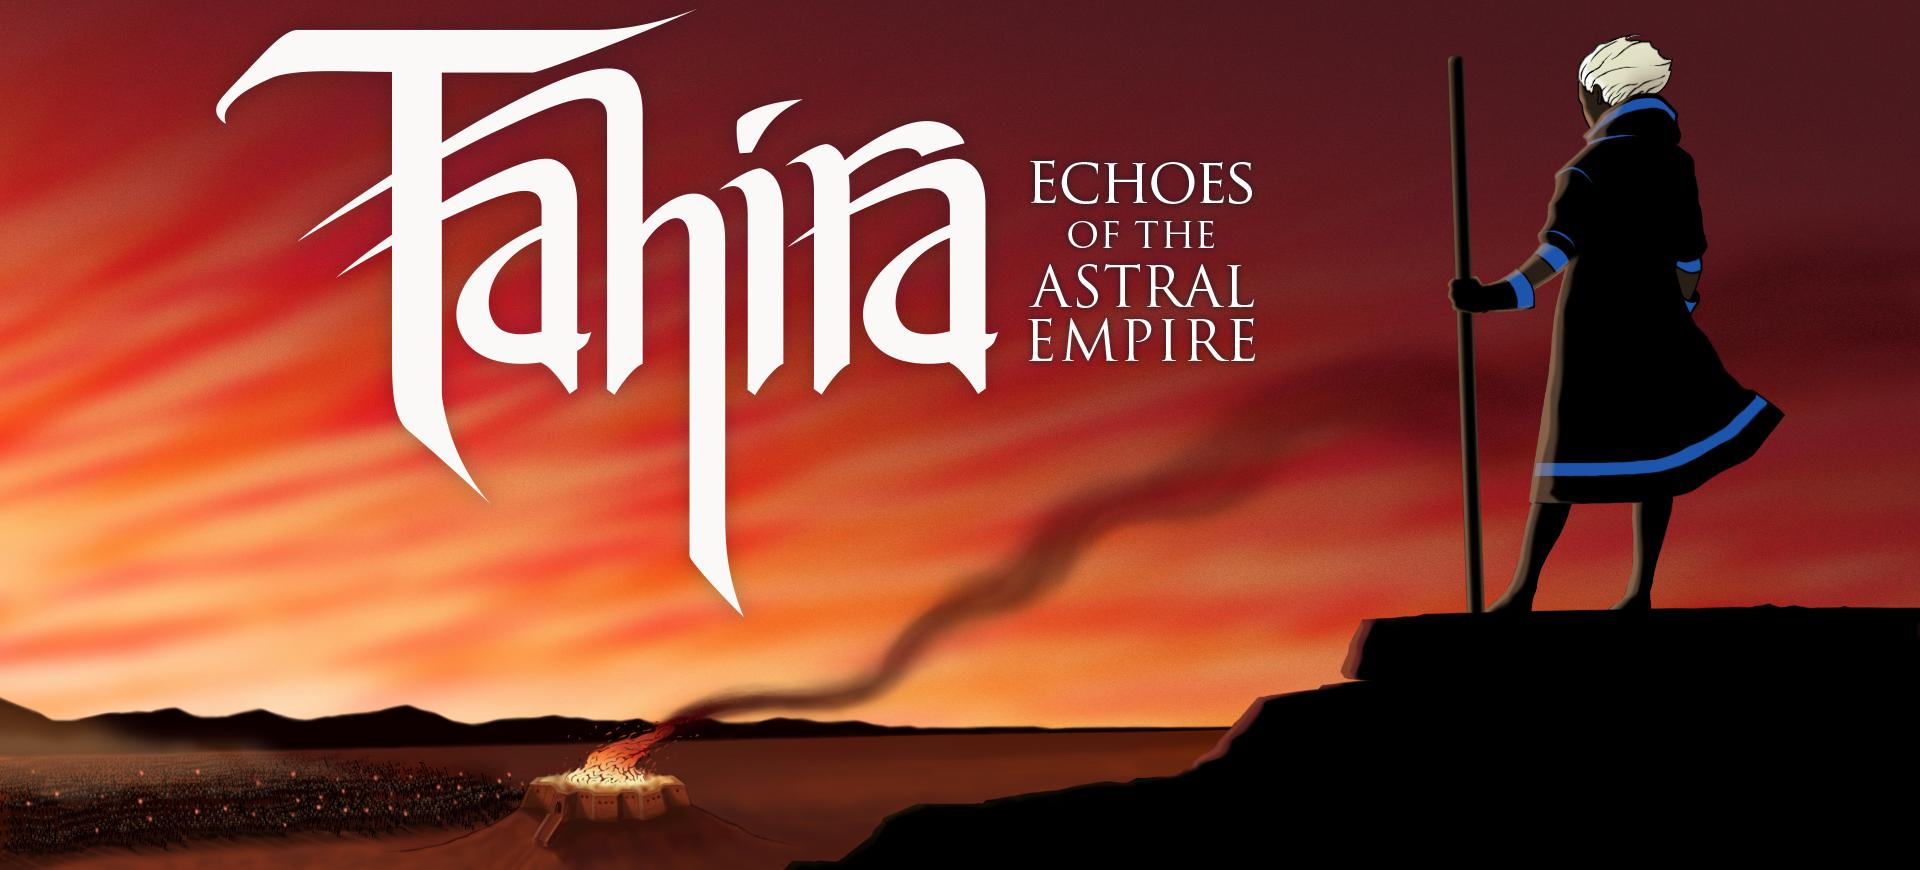 Tahira: Echoes of the Astral Empire chính thức được phát hành - Tin Game